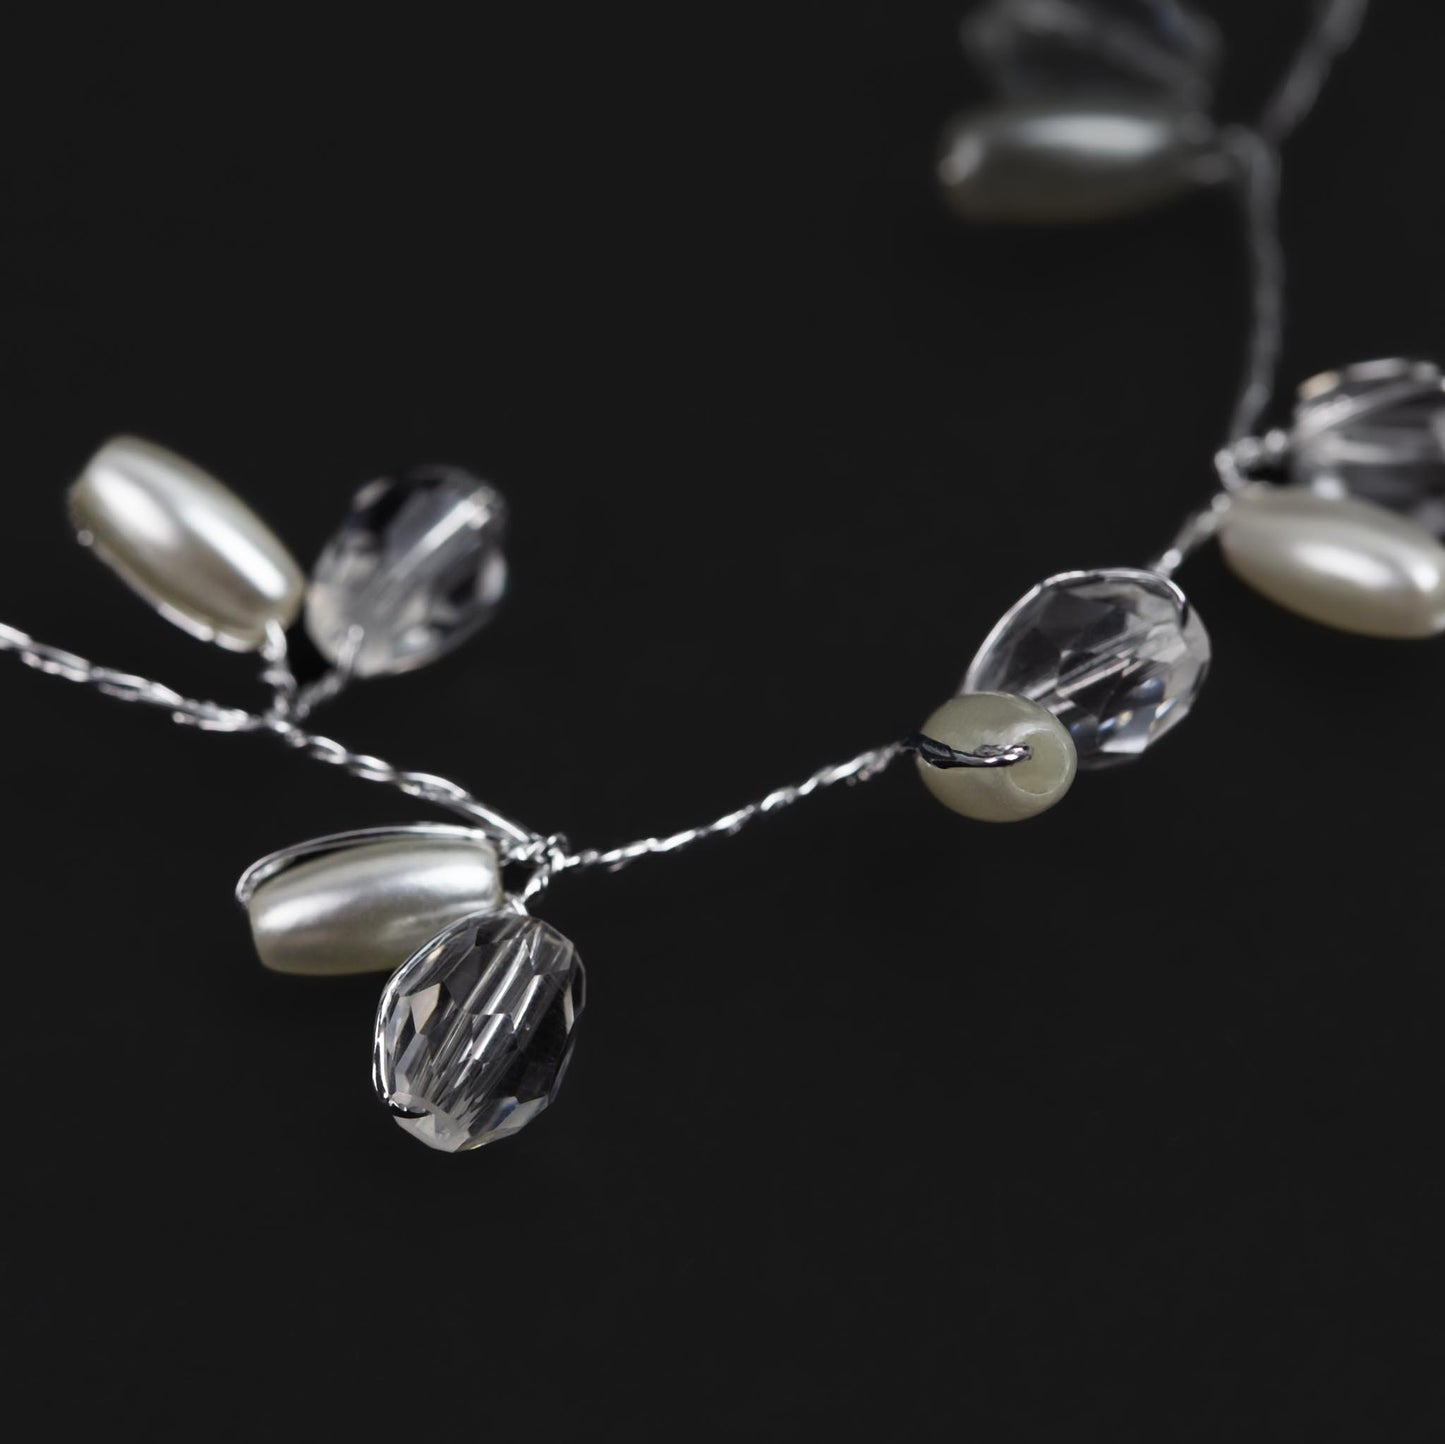 Diademă elegantă maleabilă cu pietre, perle - Argintiu